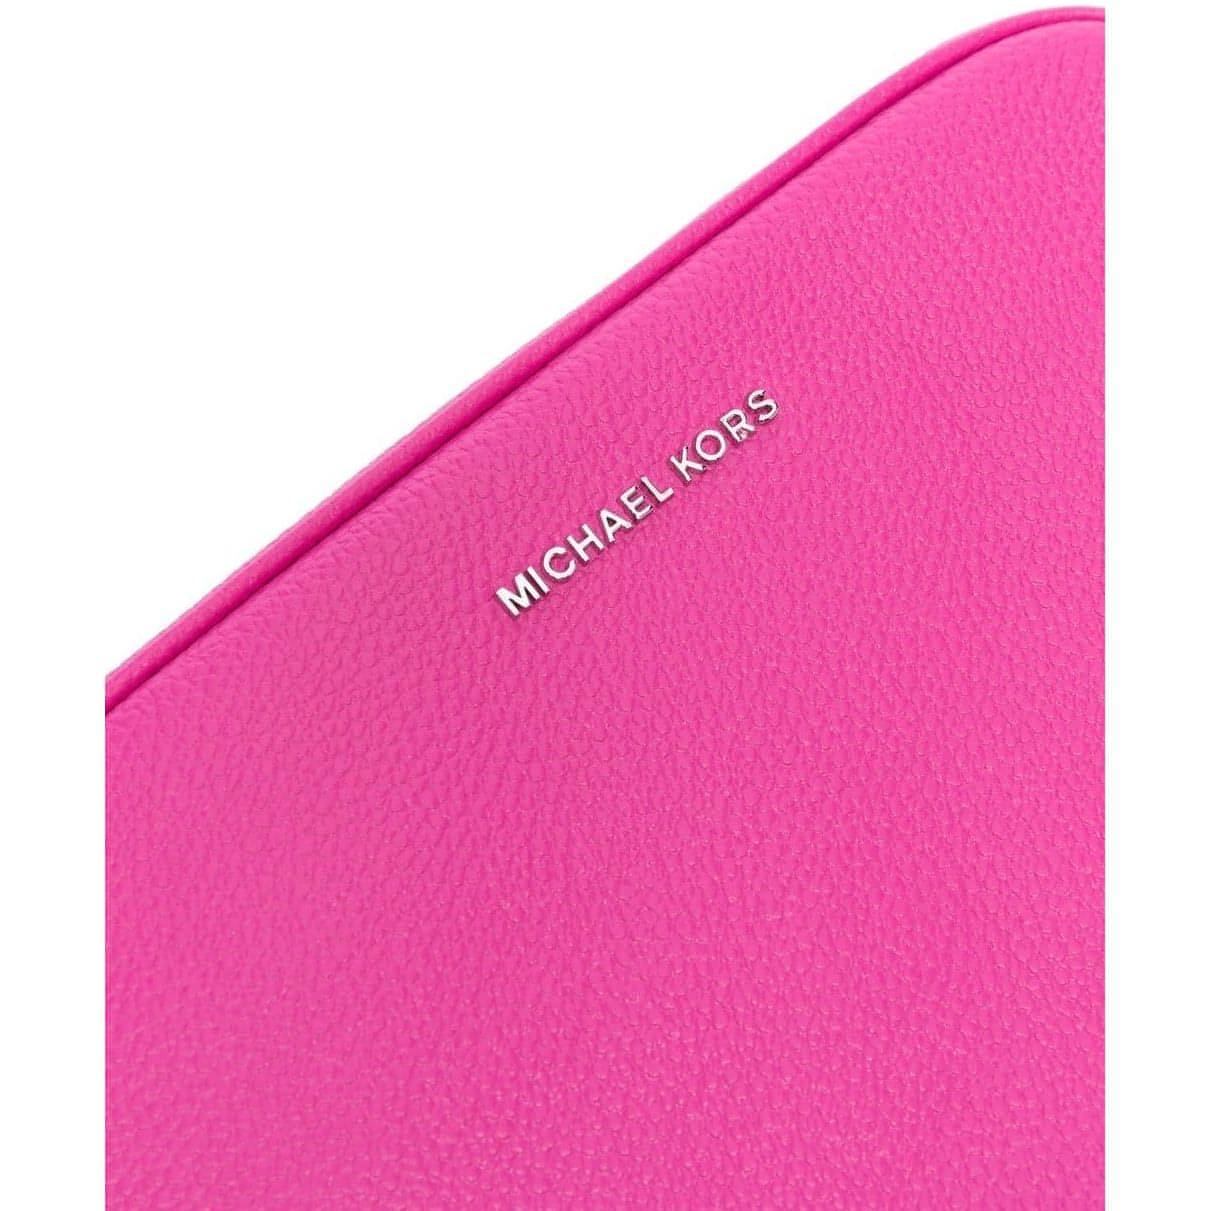 MICHAEL KORS moteriška rožinė rankinė per petį MD camera bag